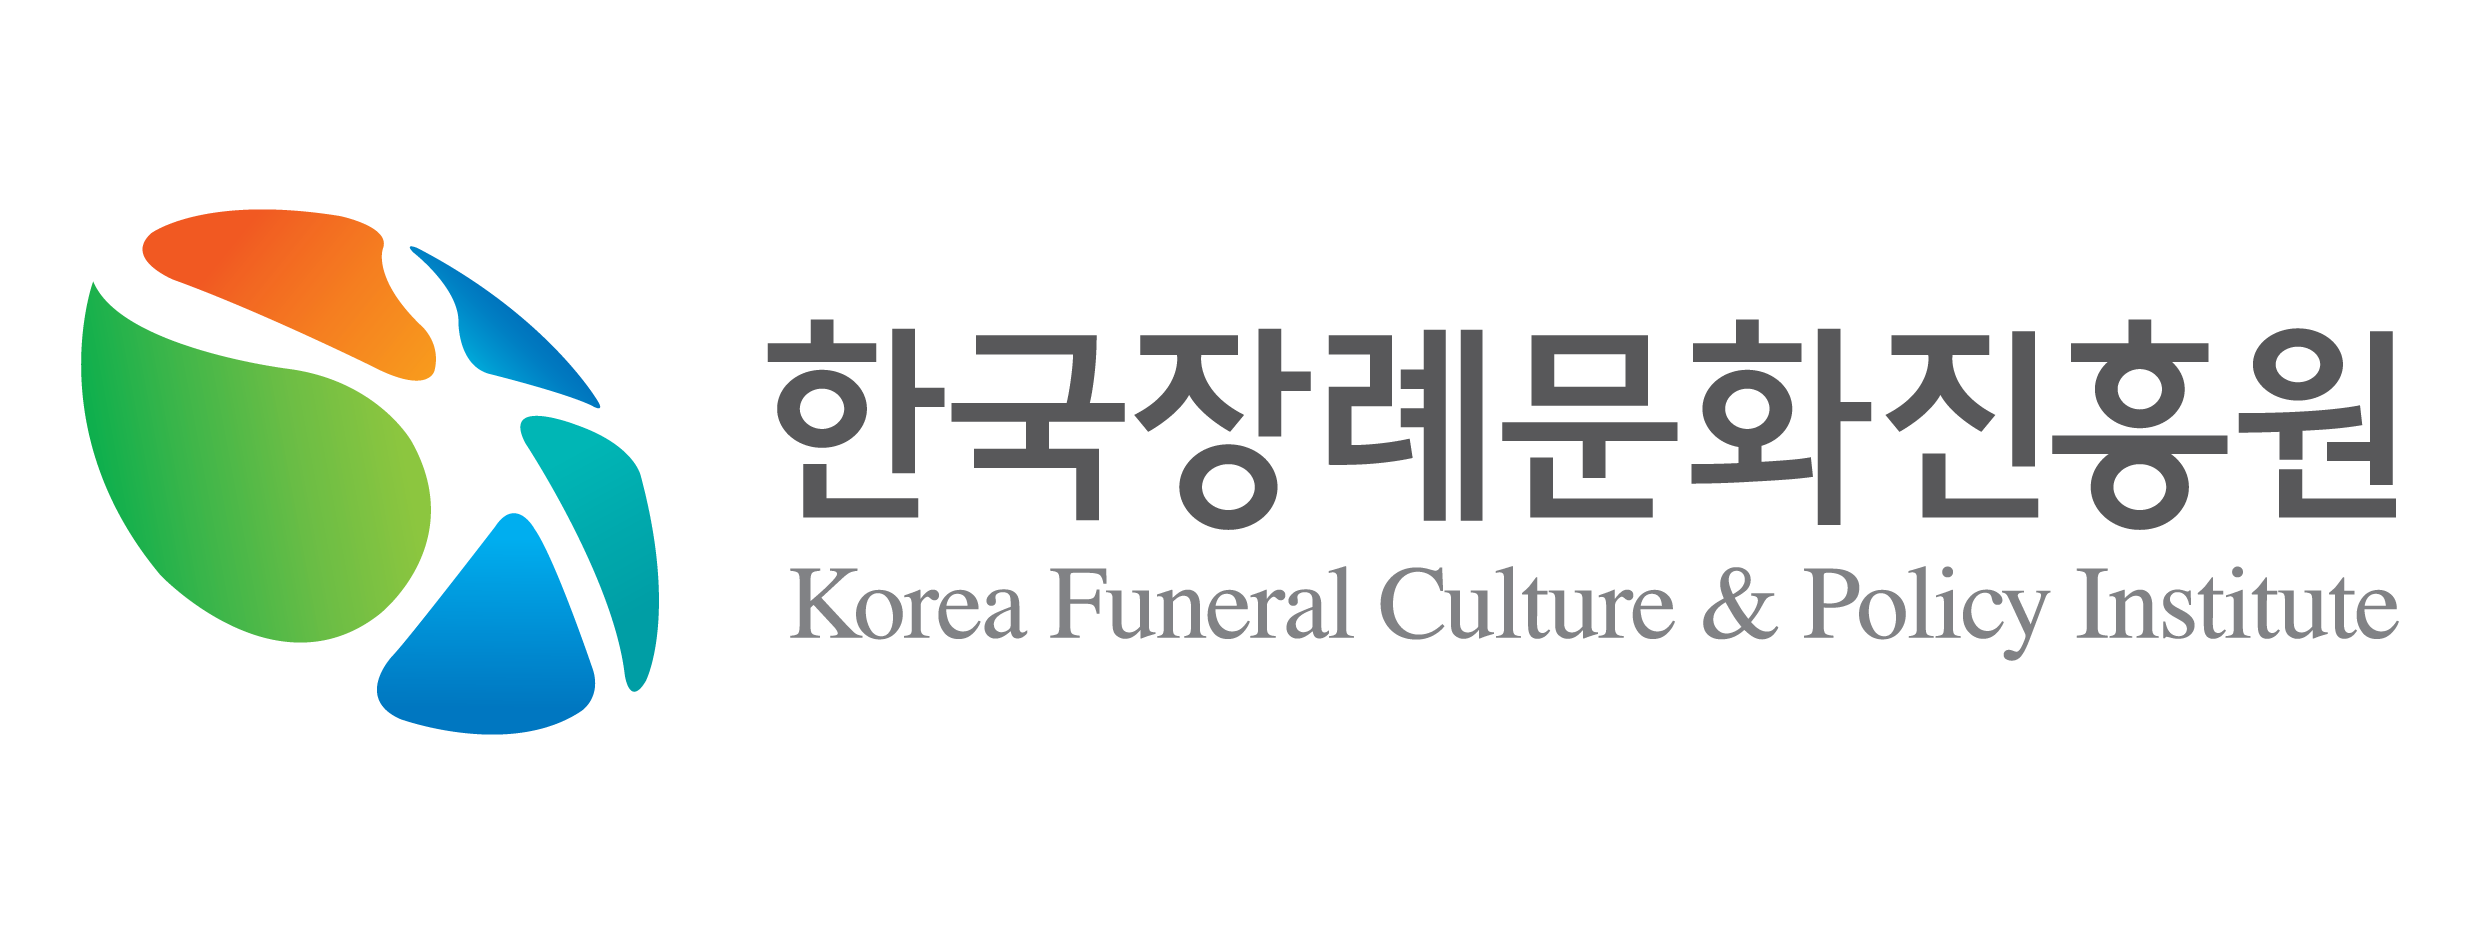 (재)한국장례문화진흥원의 기업로고